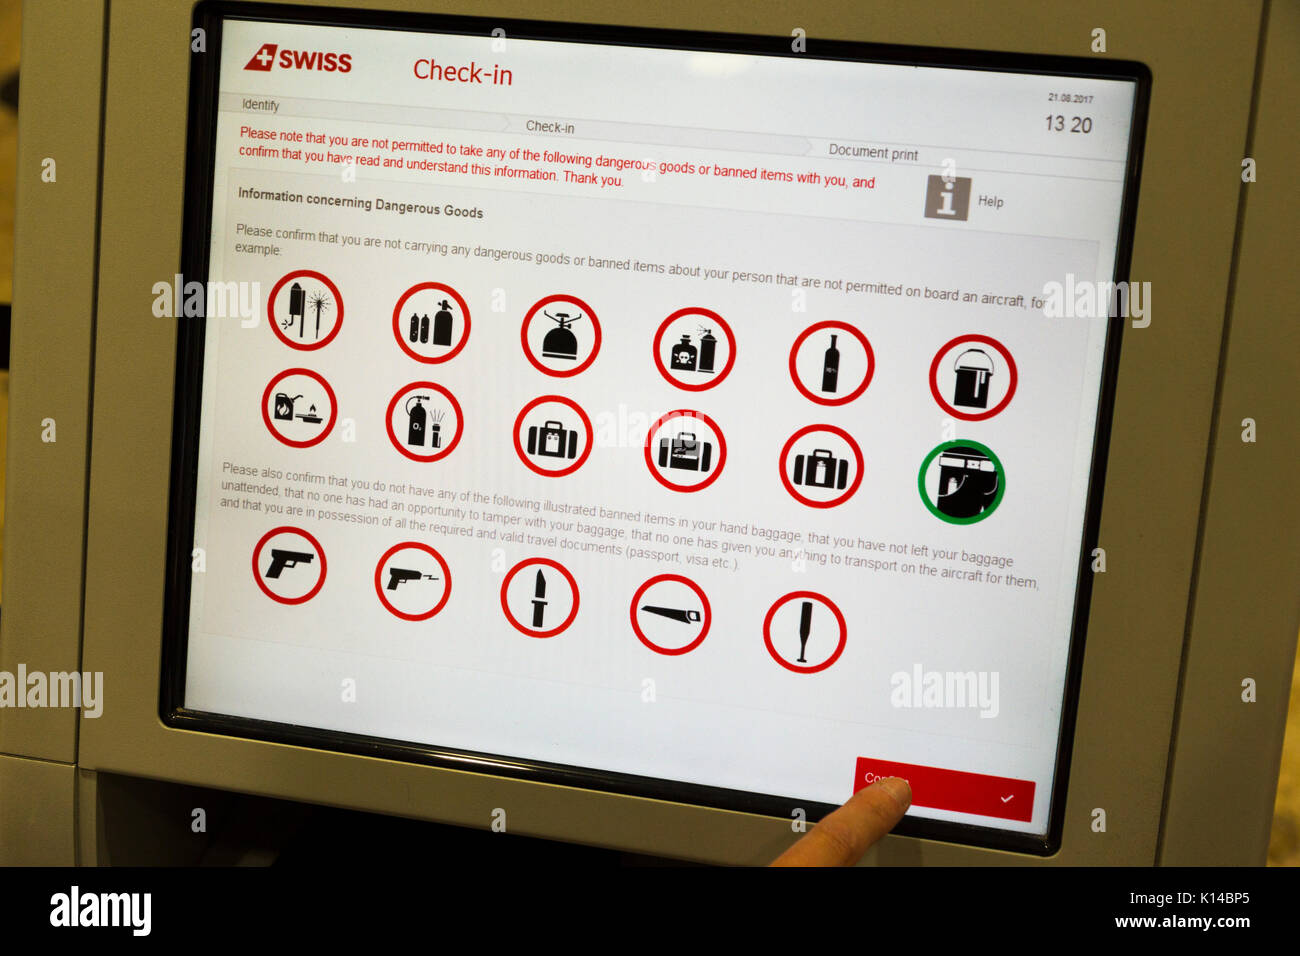 Self Check-in am Flughafen, der eine Liste der verbotenen Gegenstände, die  nicht erlaubt sind im Gepäck durchgeführt werden. Flughafen Genf, Schweiz  Stockfotografie - Alamy